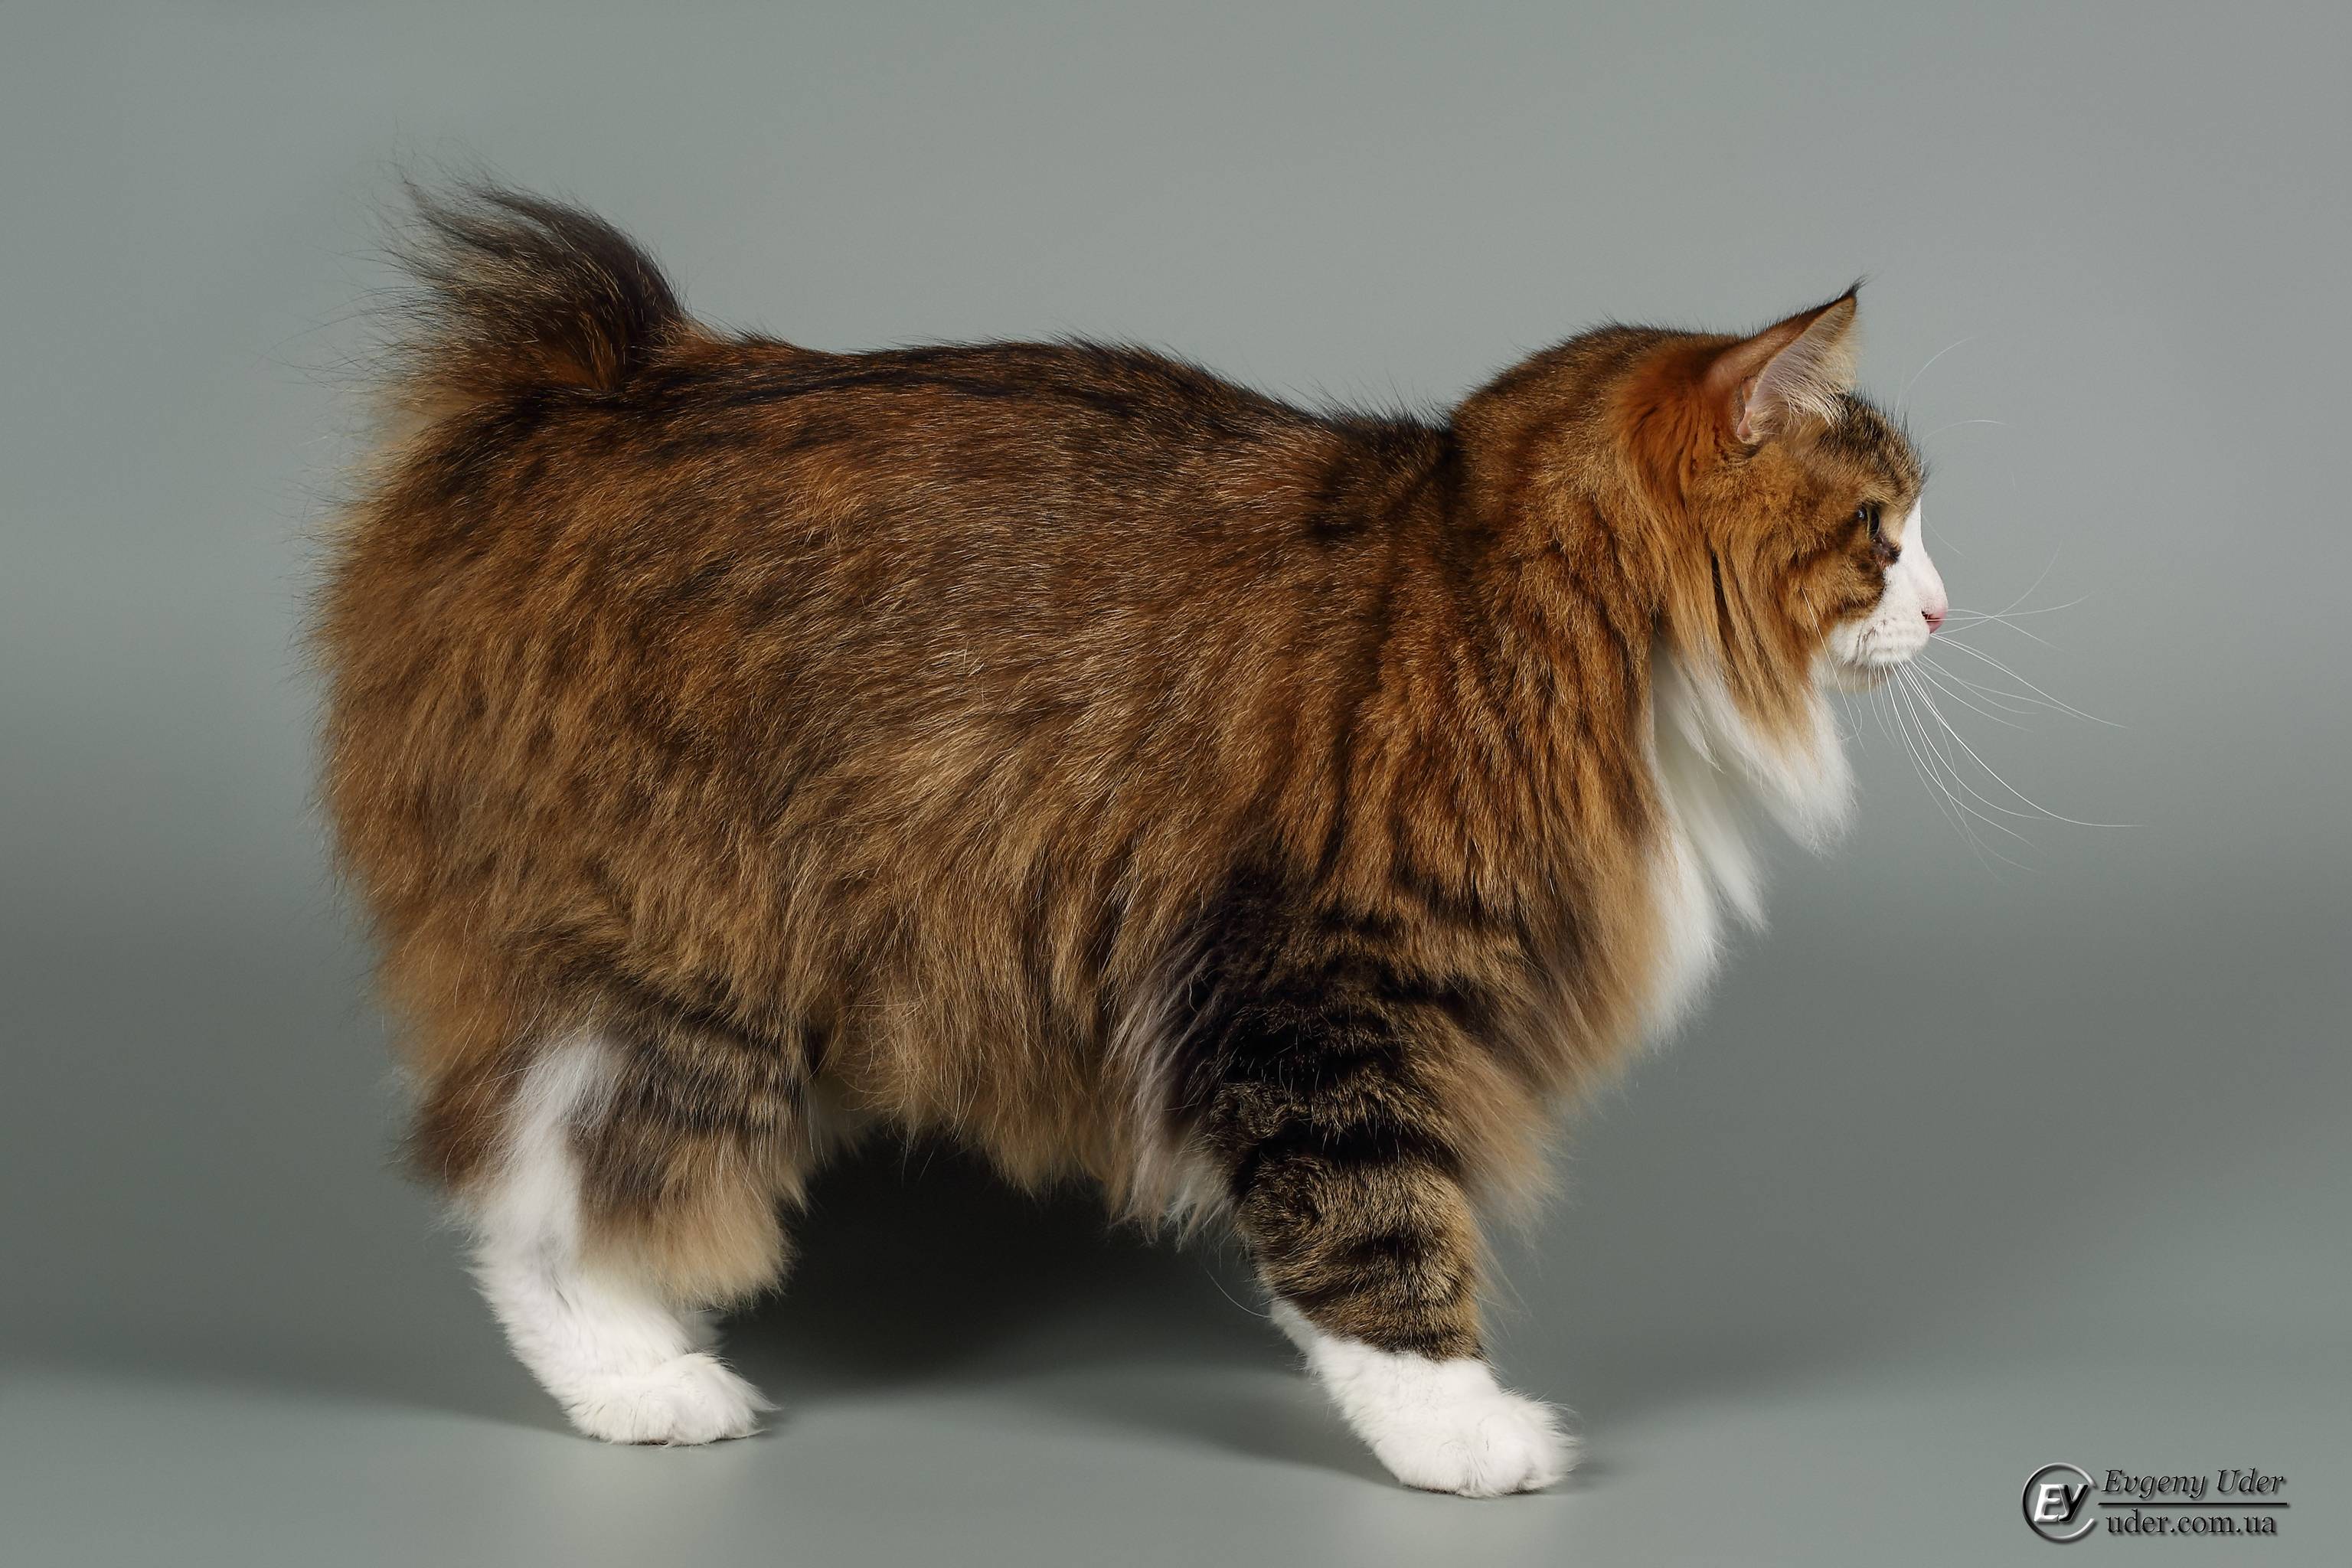 Курильский бобтейл: фото, описание породы, характер и поведение кошки, отзывы хозяев кота, выбор котенка